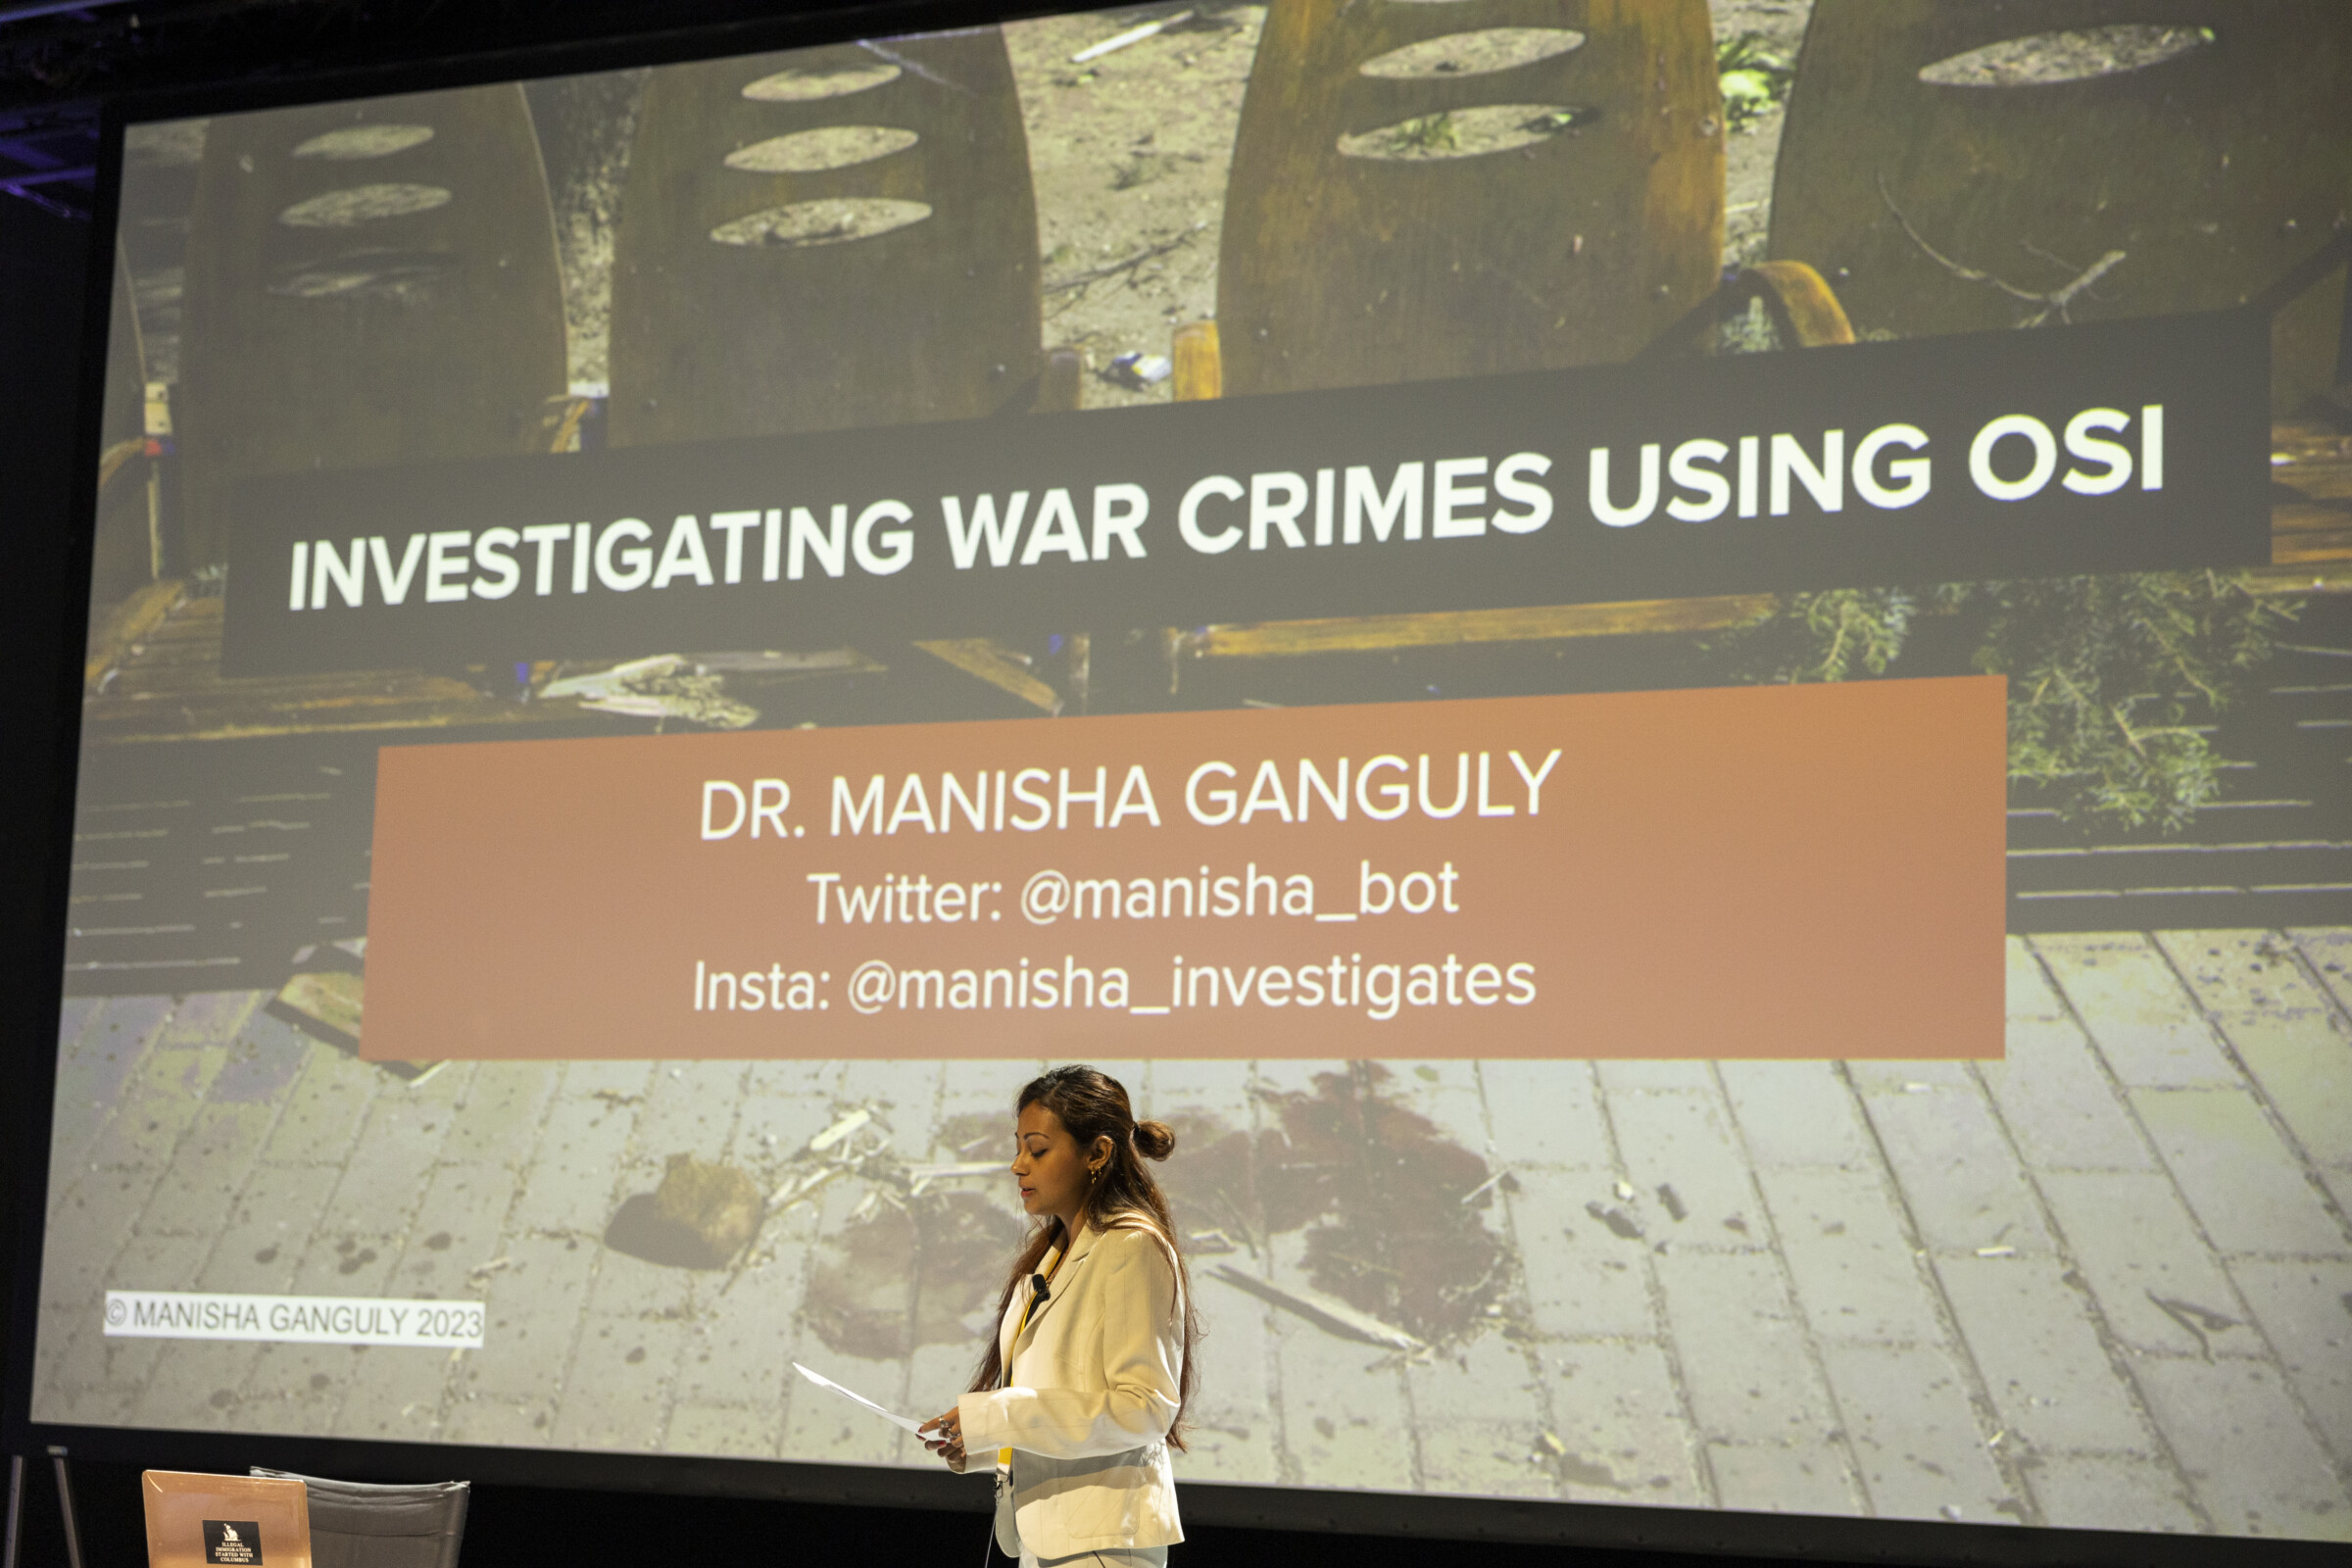 Σε αυτή την φωτογραφία φαίνεται η Μανίσα Γκανγκούλι κατά τη διάρκεια της παρουσίασης του workshop της με τίτλο "Ερευνώντας εγκλήματα πολέμου με τη χρήση OSINT", στο πλαίσιο του Διεθνούς Φόρουμ Δημοσιογραφίας του iMEdD. Στο πίσω μέρος φαίνεται μια διαφάνεια με τον τίτλο του workshop και το όνομα με τα στοιχεία επικοινωνίας της Μανίσα Γκανγκόυλι.